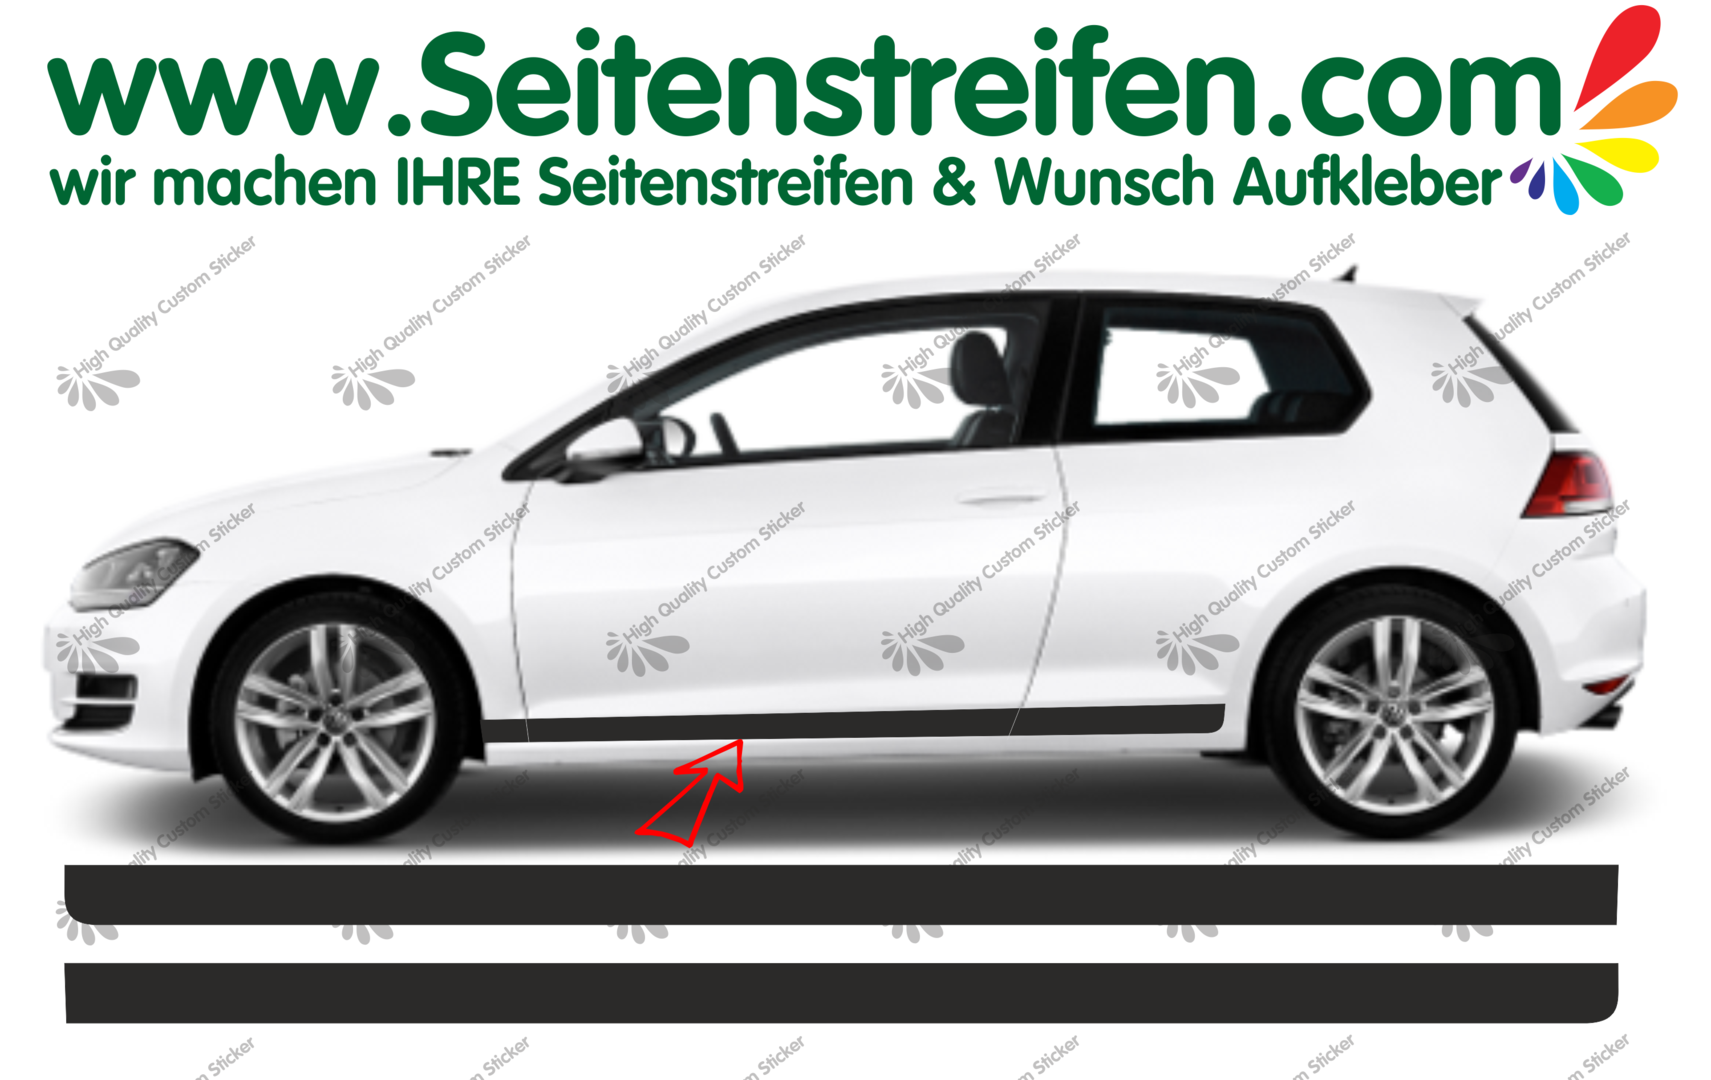 VW Golf GTI CLUBSPORT LOOK Seitenstreifen Aufkleber Dekor Set für 3/4 Türer Art. Nr.: 8500